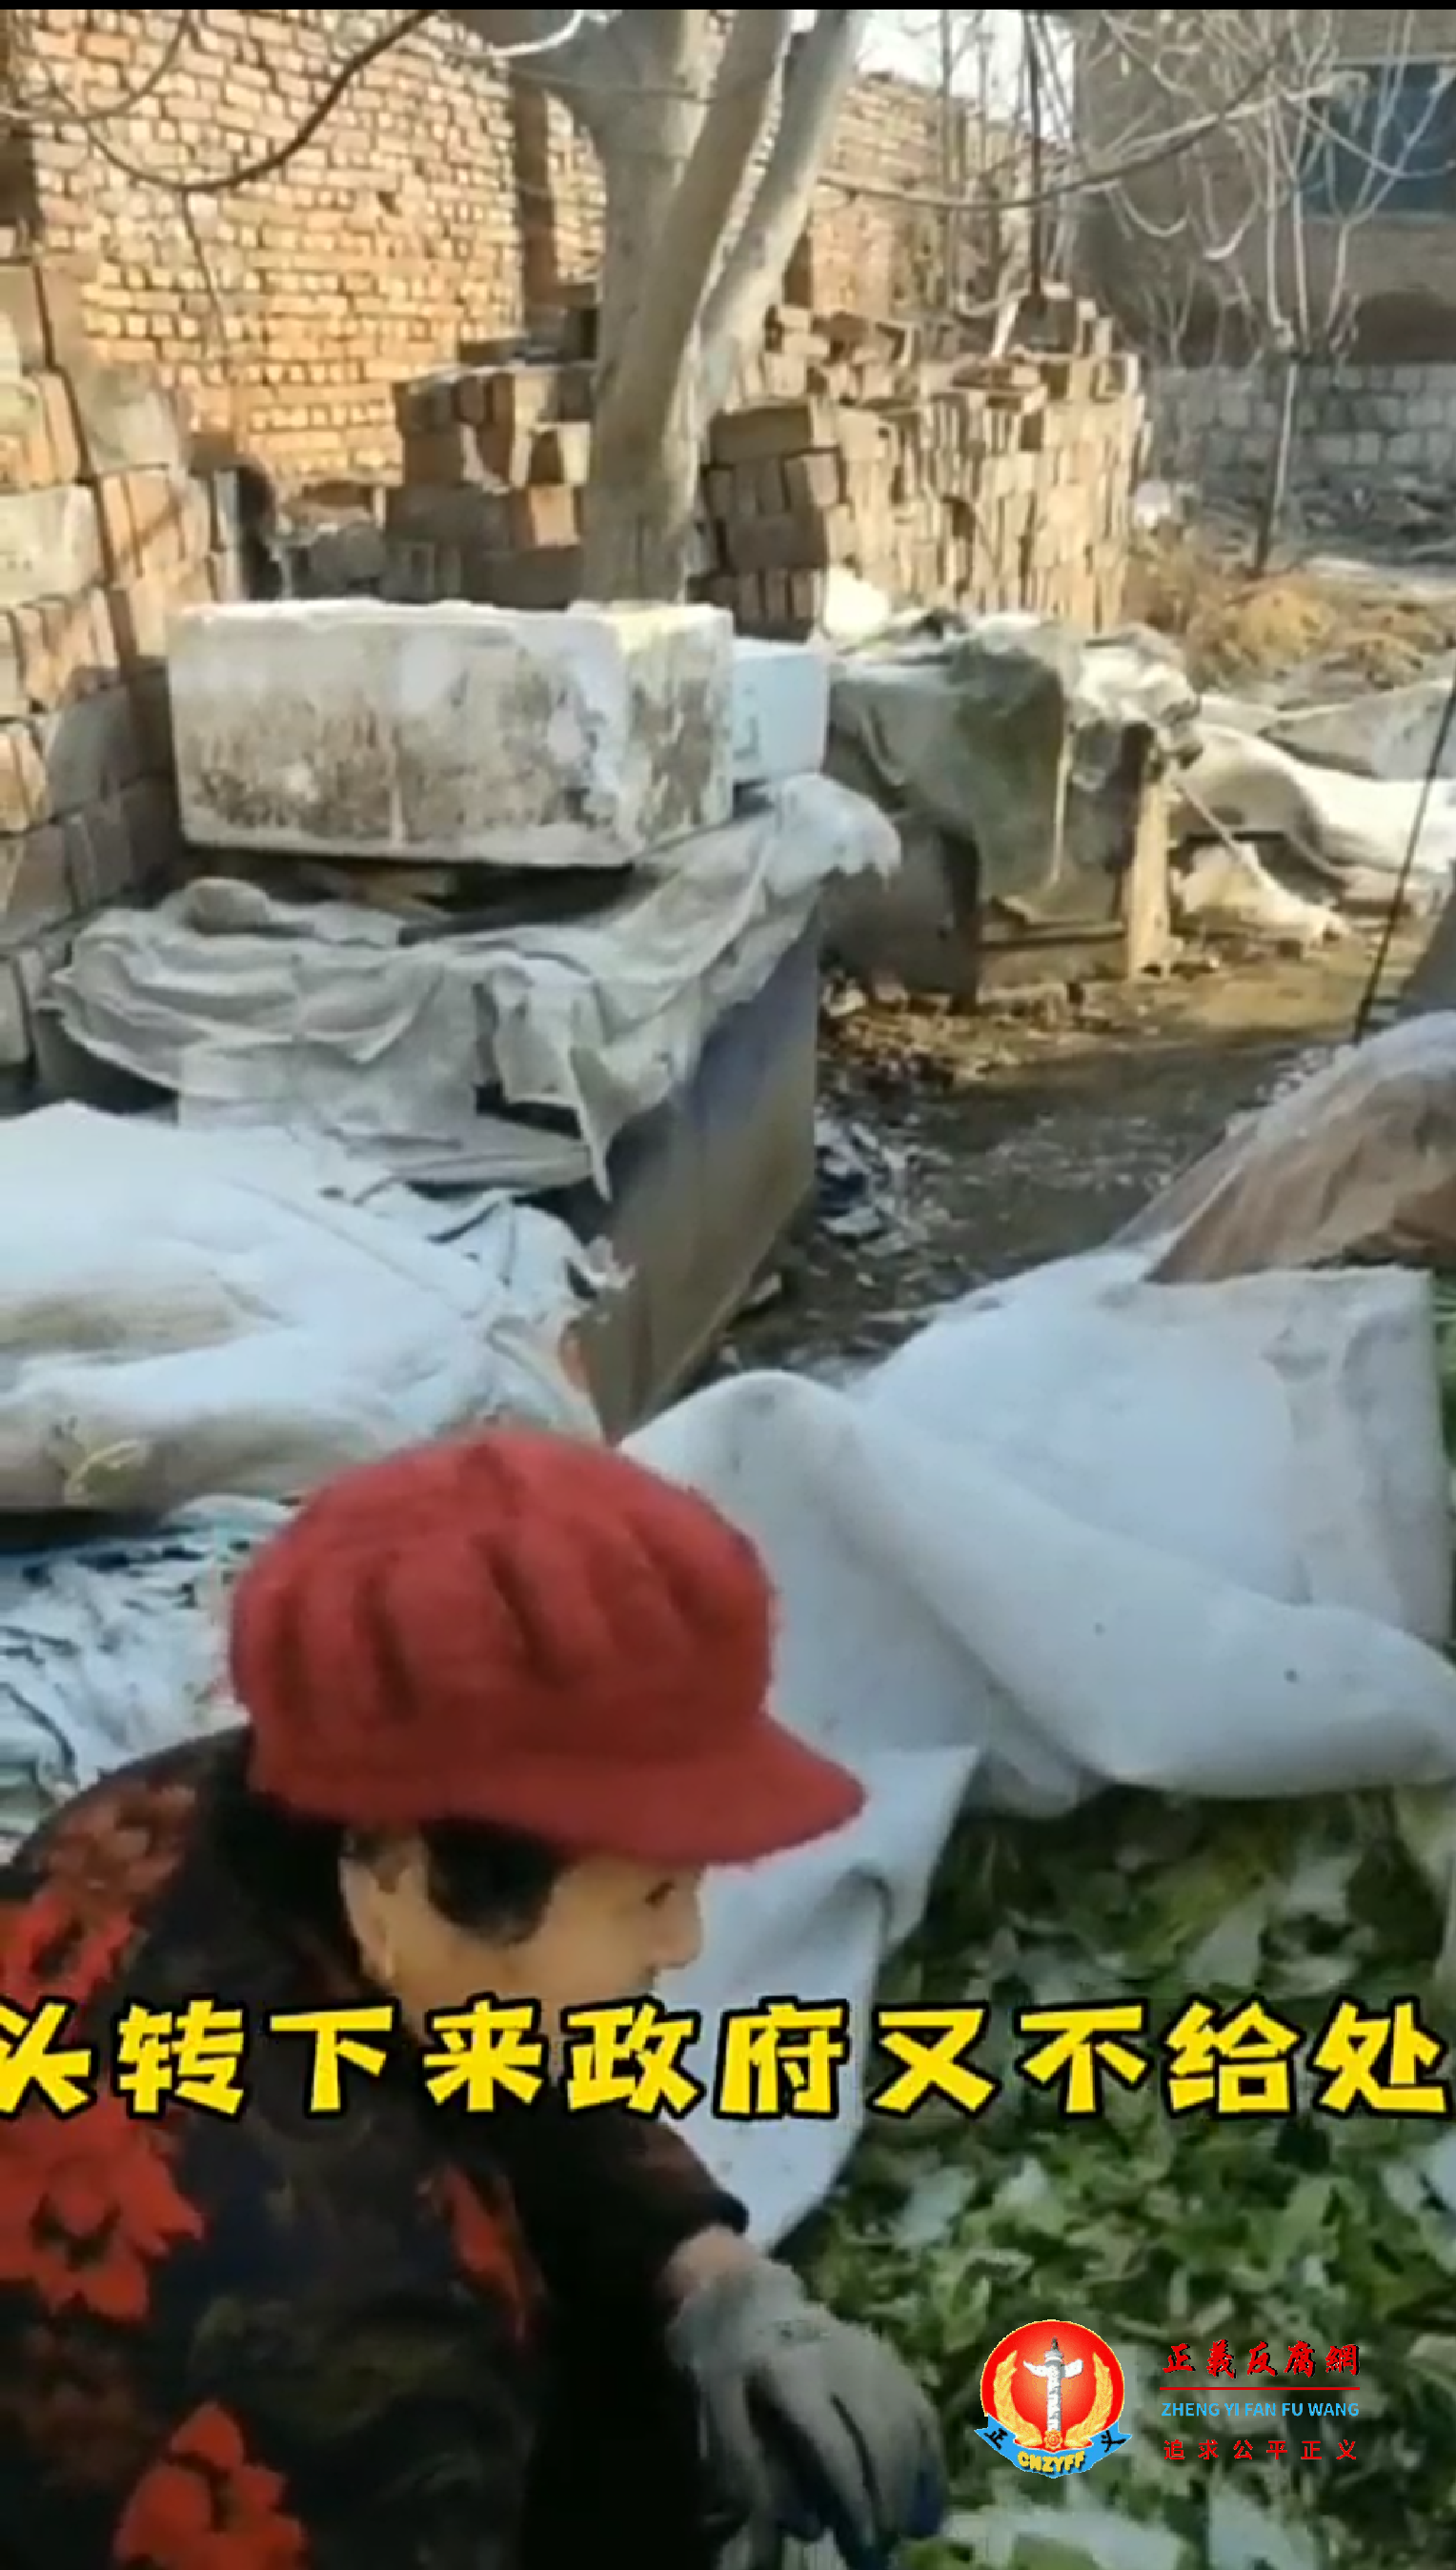 王玉杨夫妻在被拆掉的废墟上生活，一早夫妻俩到菜市场捡被丢弃的菜叶维生.png